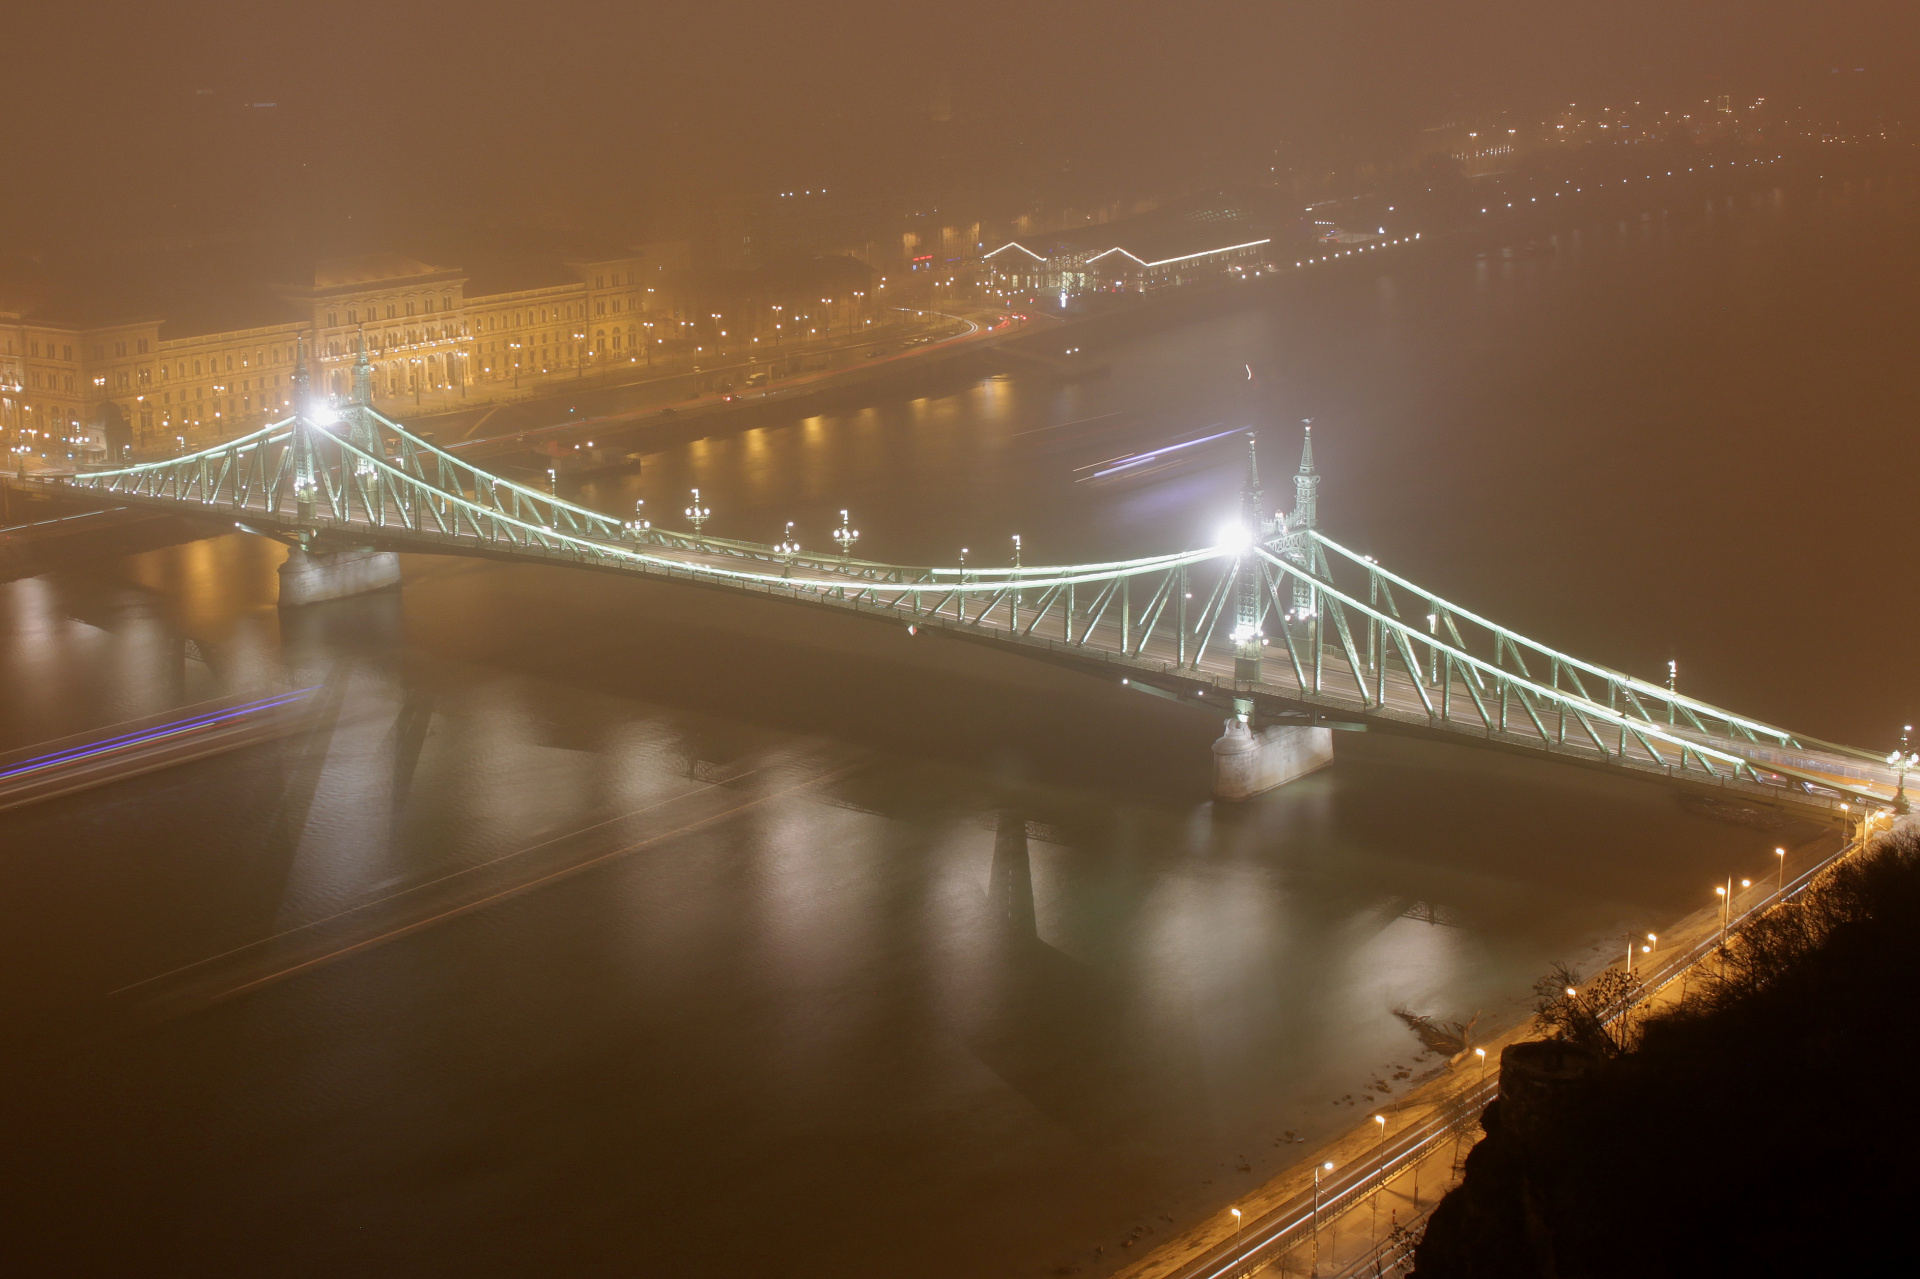 Szabadság híd - Liberty Bridge from Gellért Hill (Travels » Budapest » Budapest at Night)